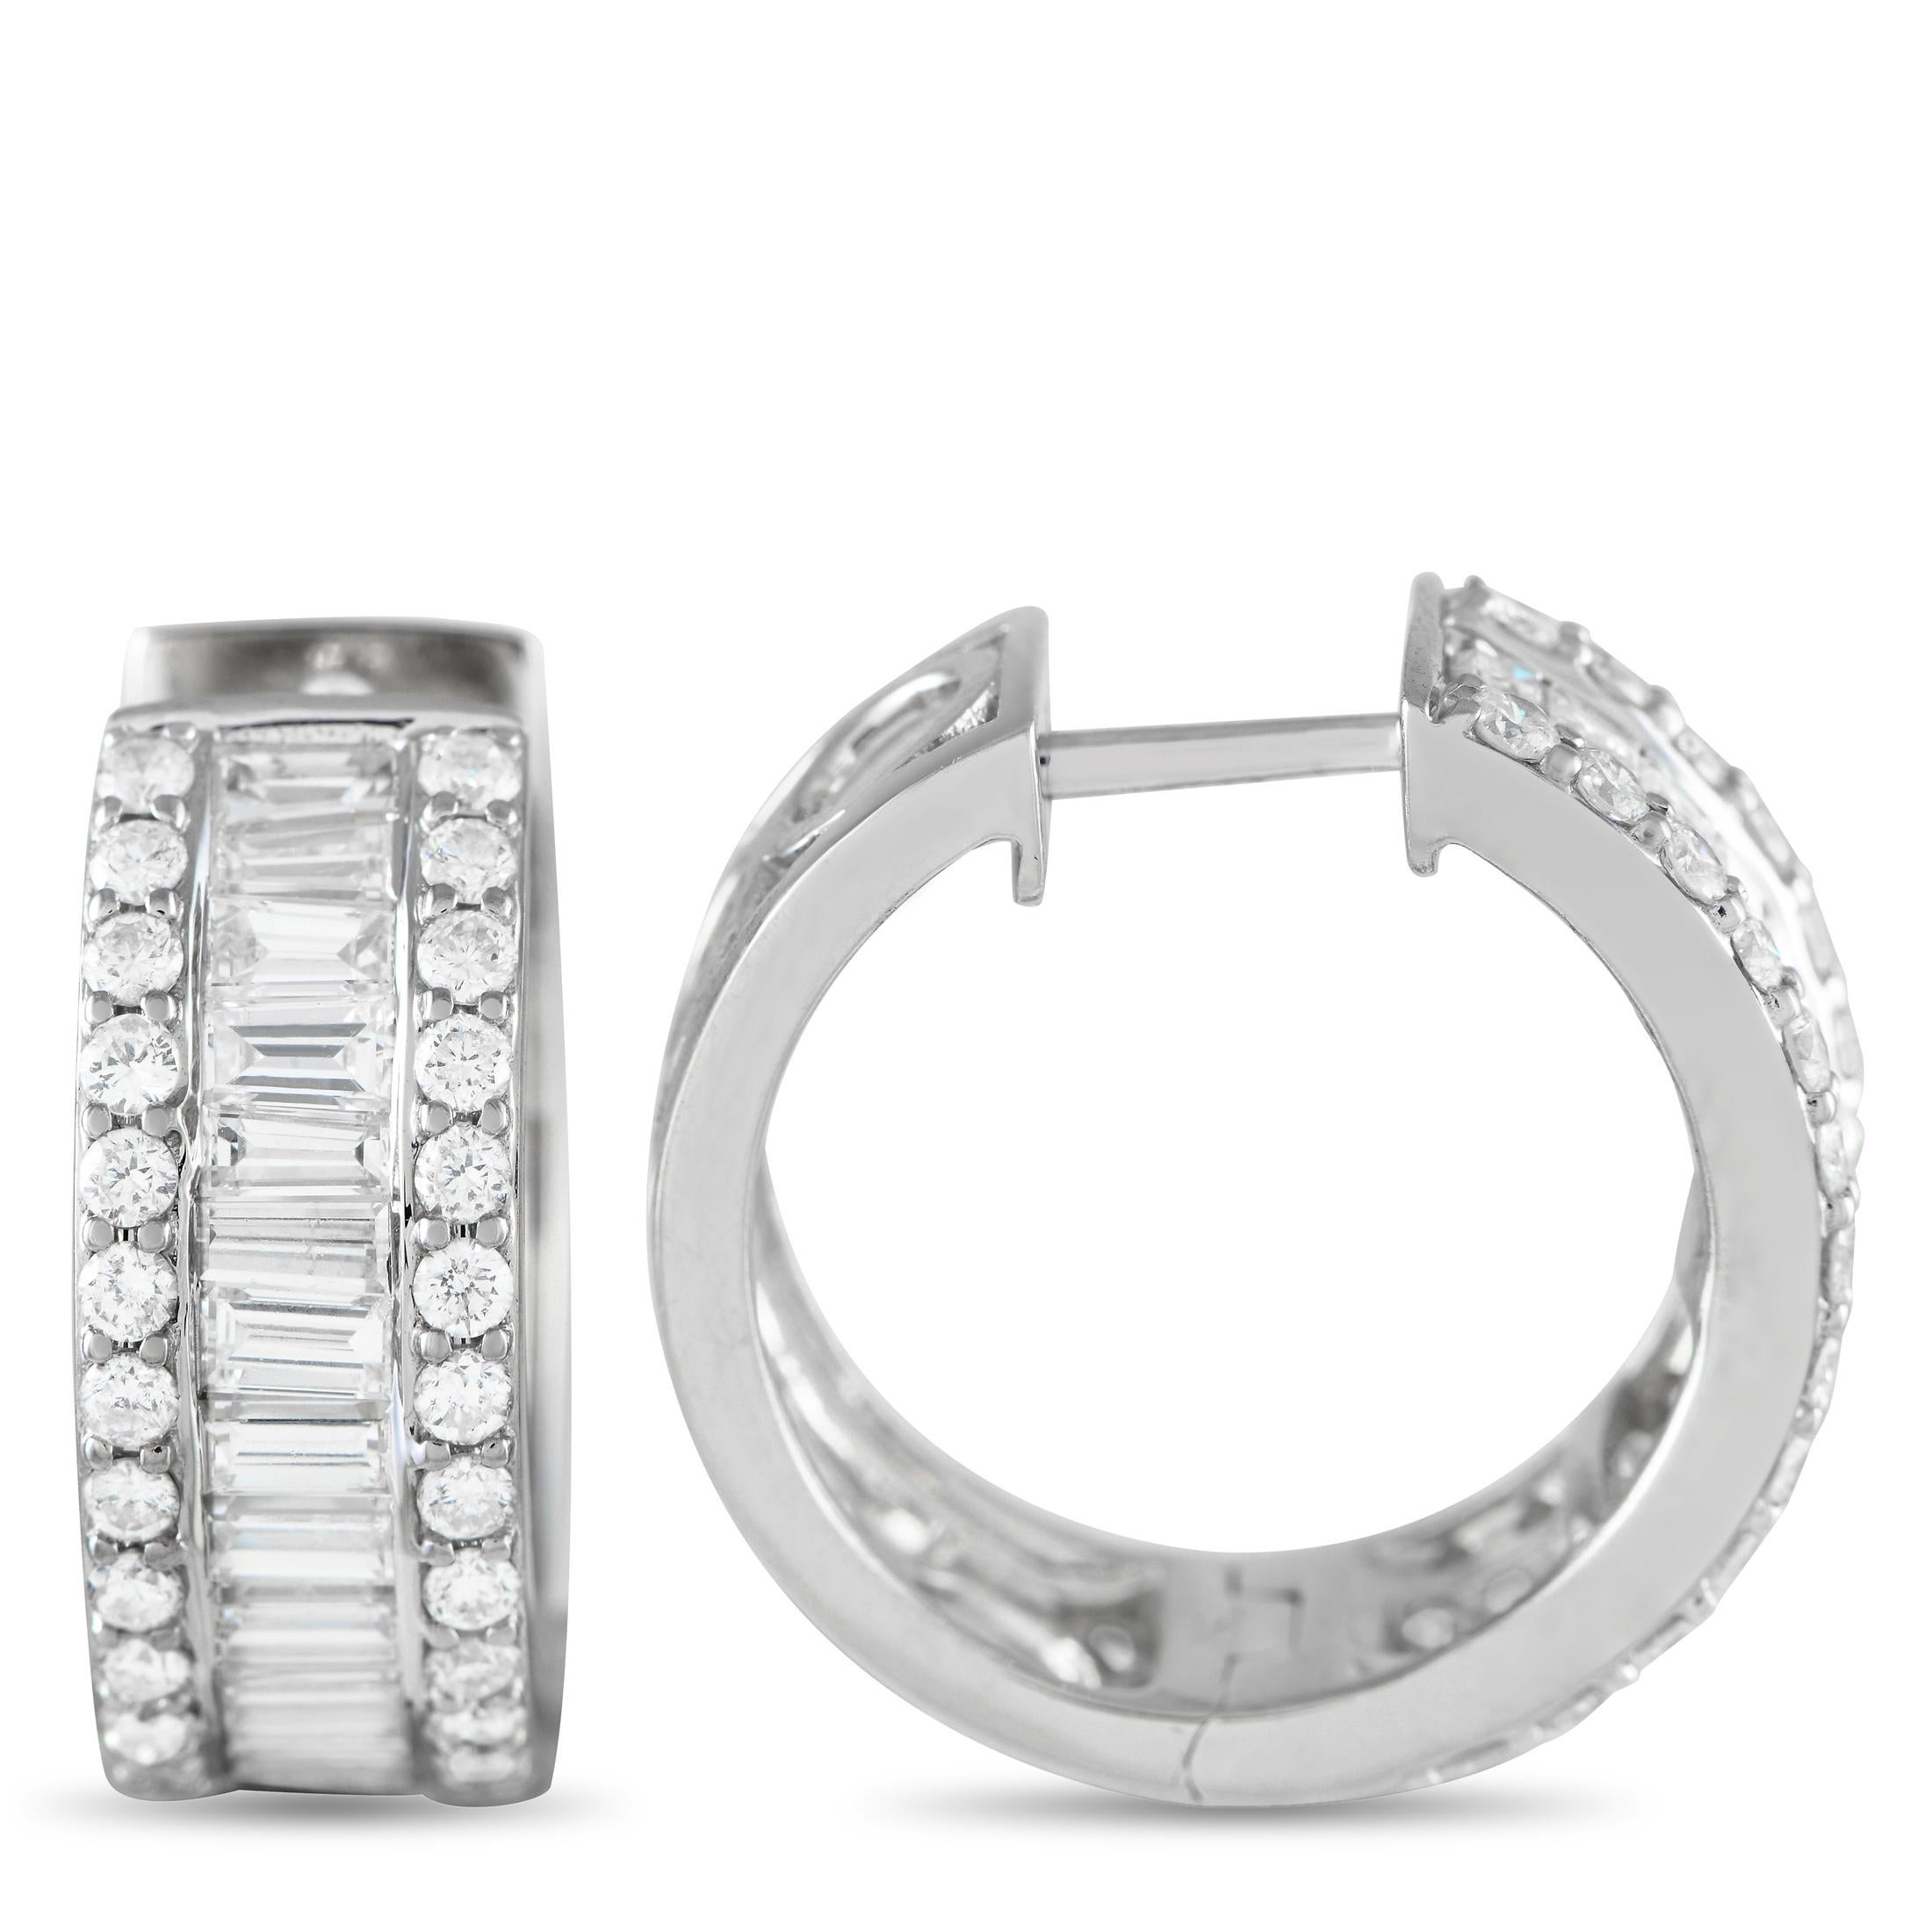 Mit diesen Diamantringen gelingt Ihnen im Handumdrehen ein luxuriöser Look. Sie sind mit drei Reihen von Diamanten verziert. In der Mitte befindet sich eine Reihe von Baguette-Diamanten in einer Kanalfassung. Dieses brandneue Paar Ohrringe aus 18